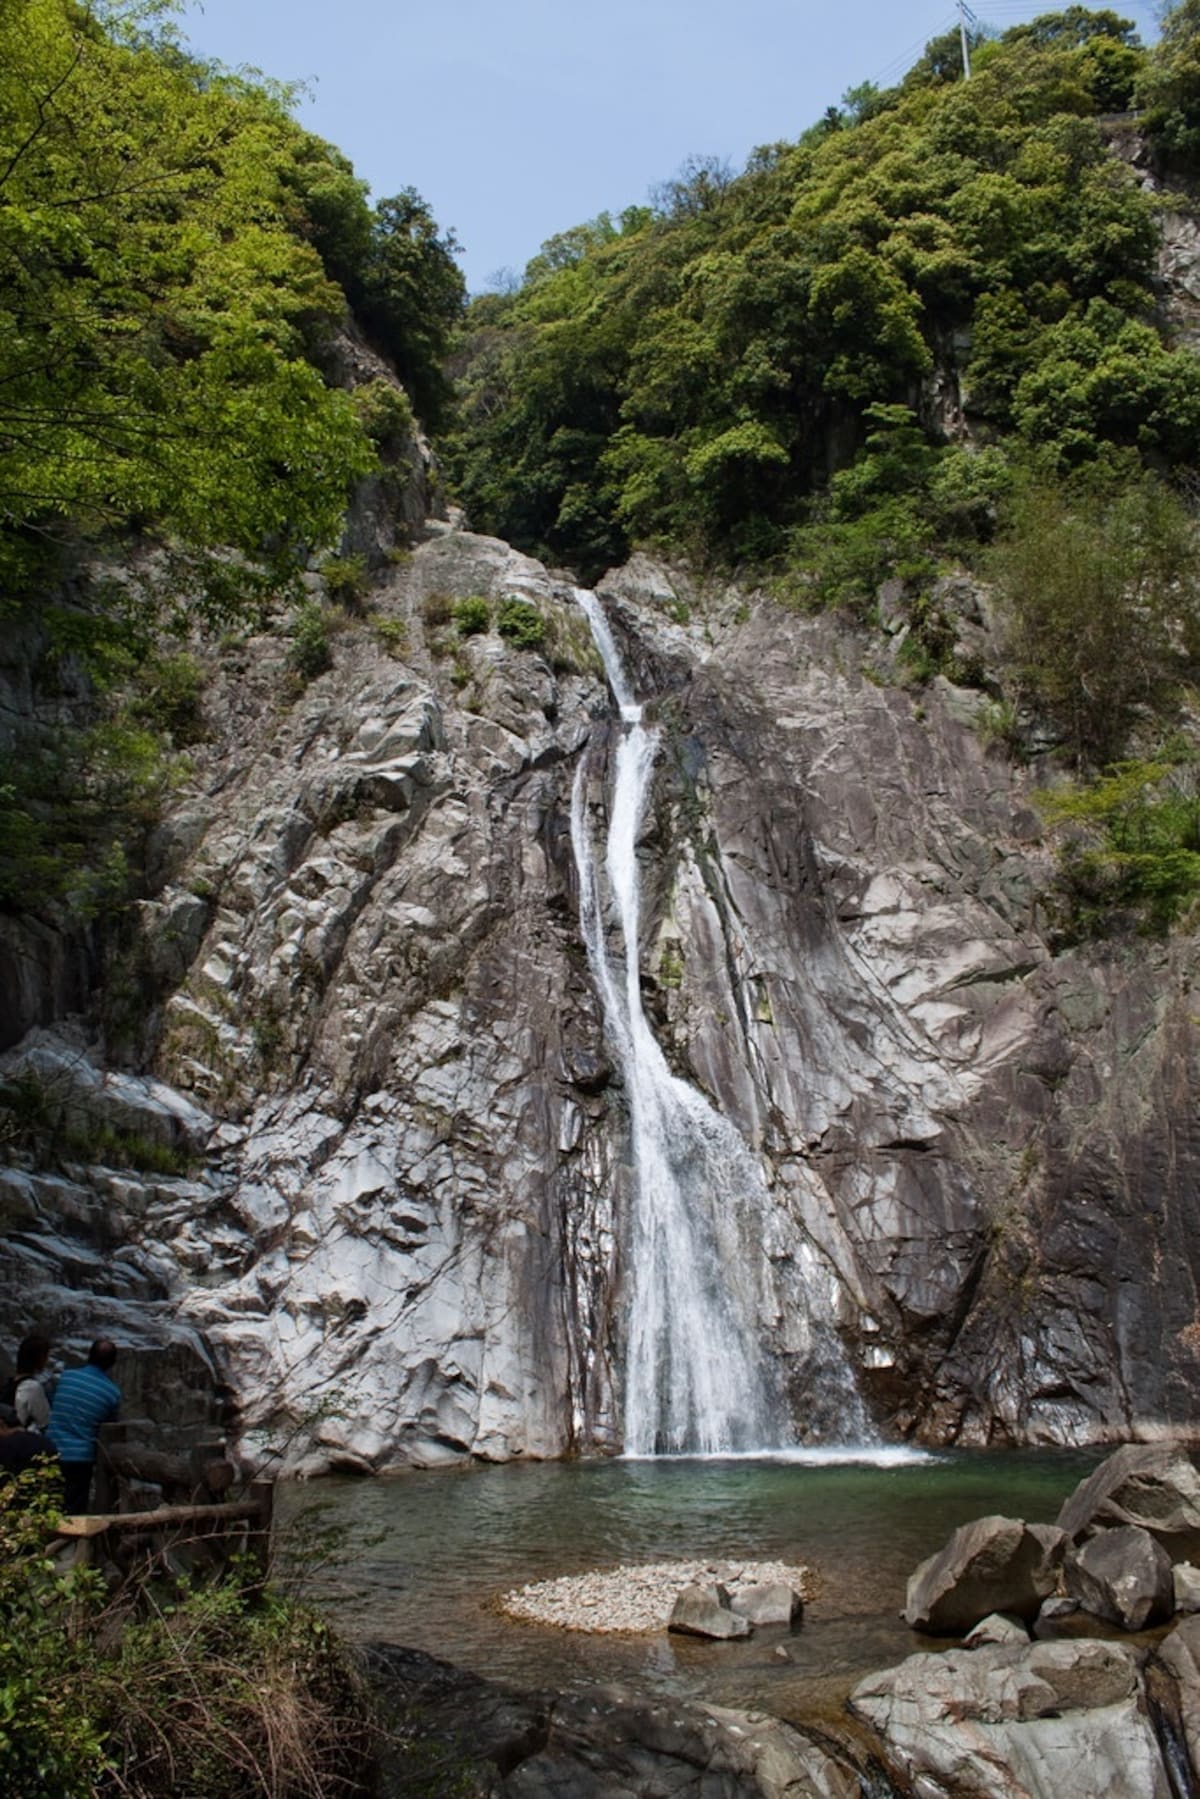 10. Nunobiki Falls